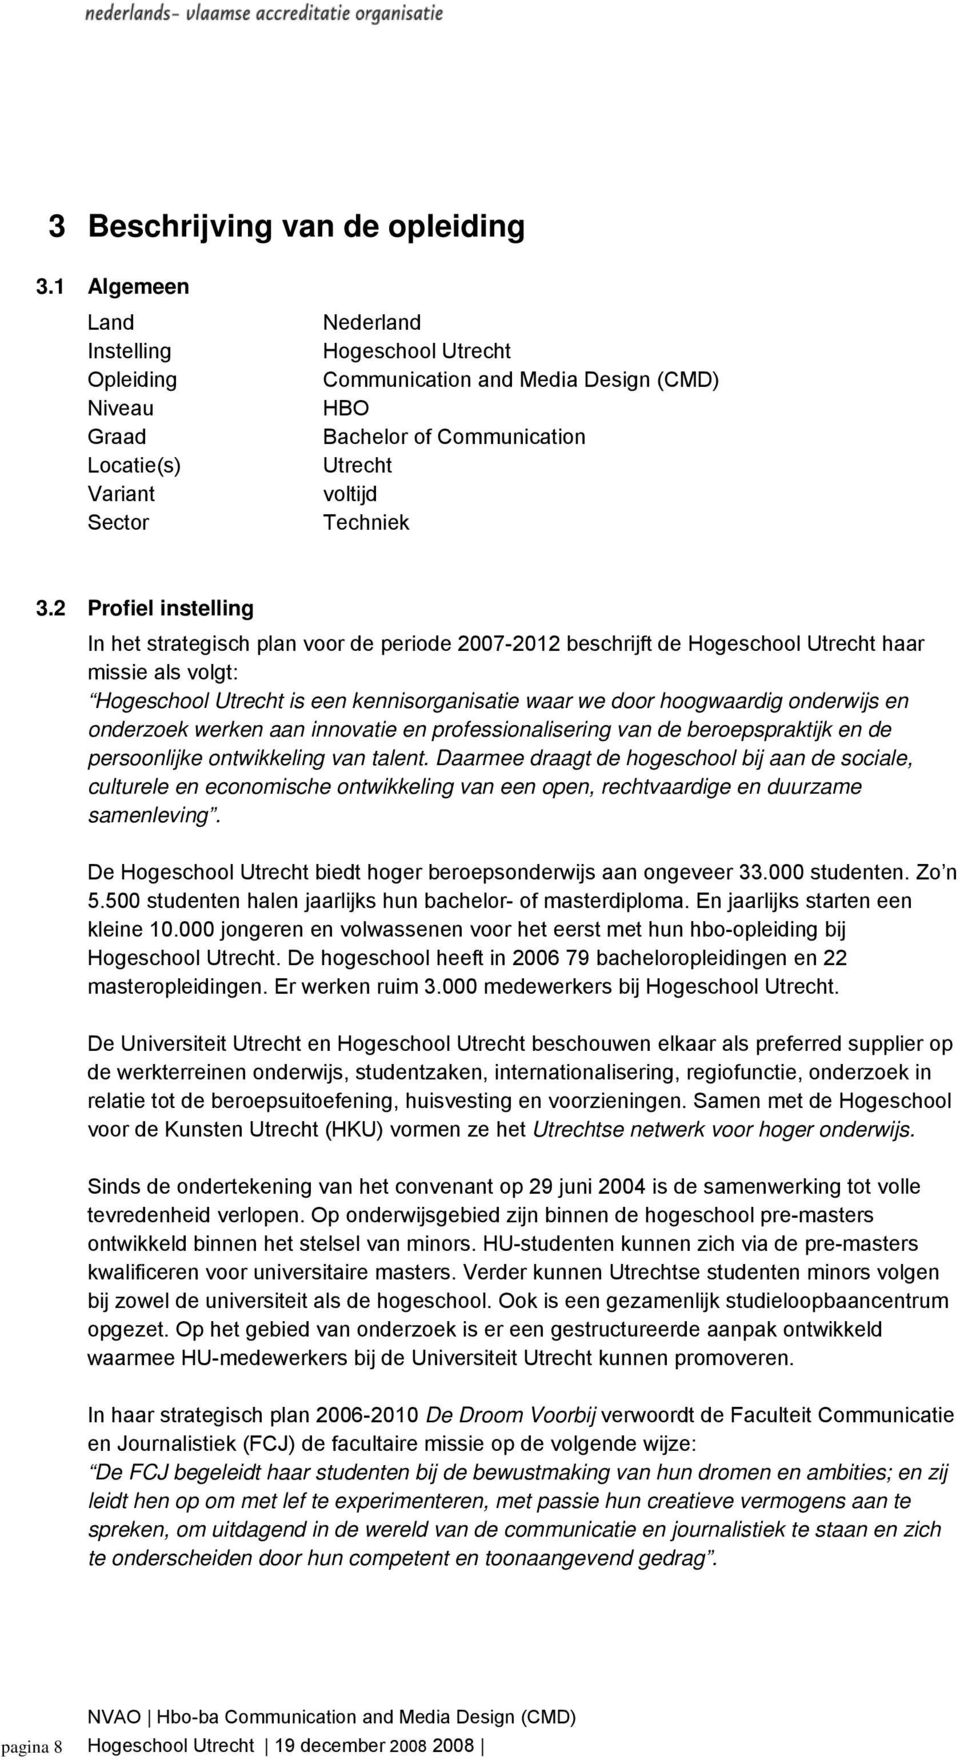 2 Profiel instelling In het strategisch plan voor de periode 2007-2012 beschrijft de Hogeschool Utrecht haar missie als volgt: Hogeschool Utrecht is een kennisorganisatie waar we door hoogwaardig